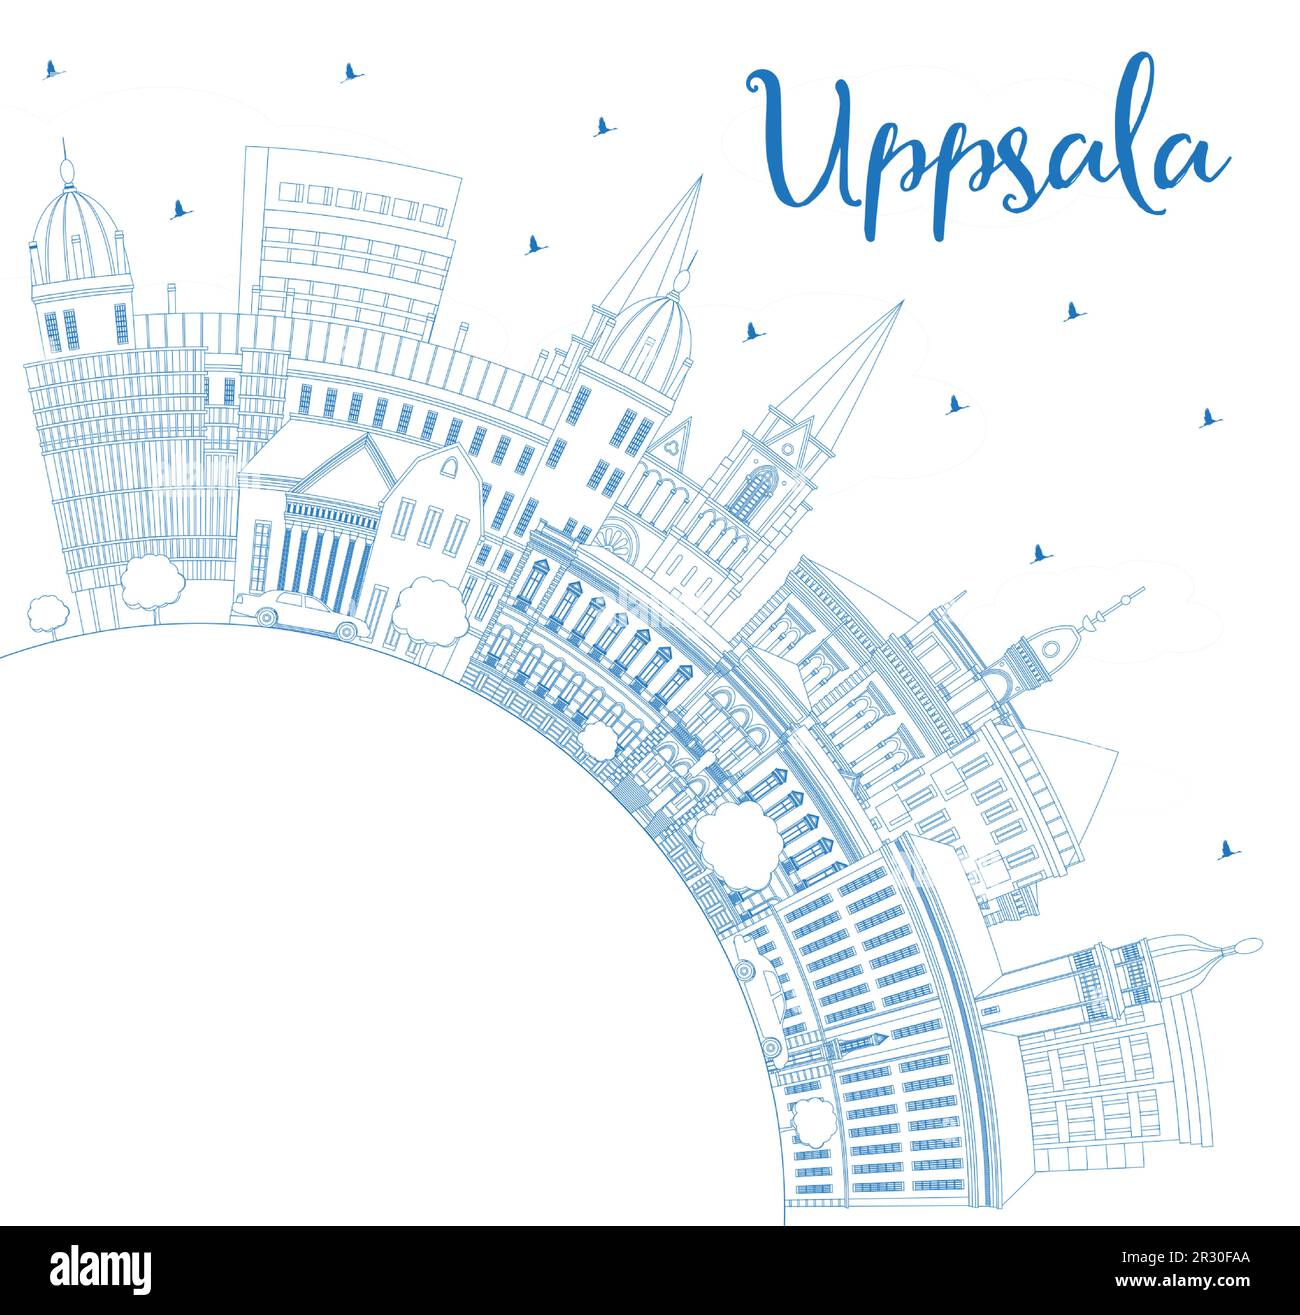 Contorno Uppsala Sweden City Skyline con edificios azules y espacio de copia. Ilustración vectorial. Paisaje urbano de Uppsala con puntos de interés. Ilustración del Vector